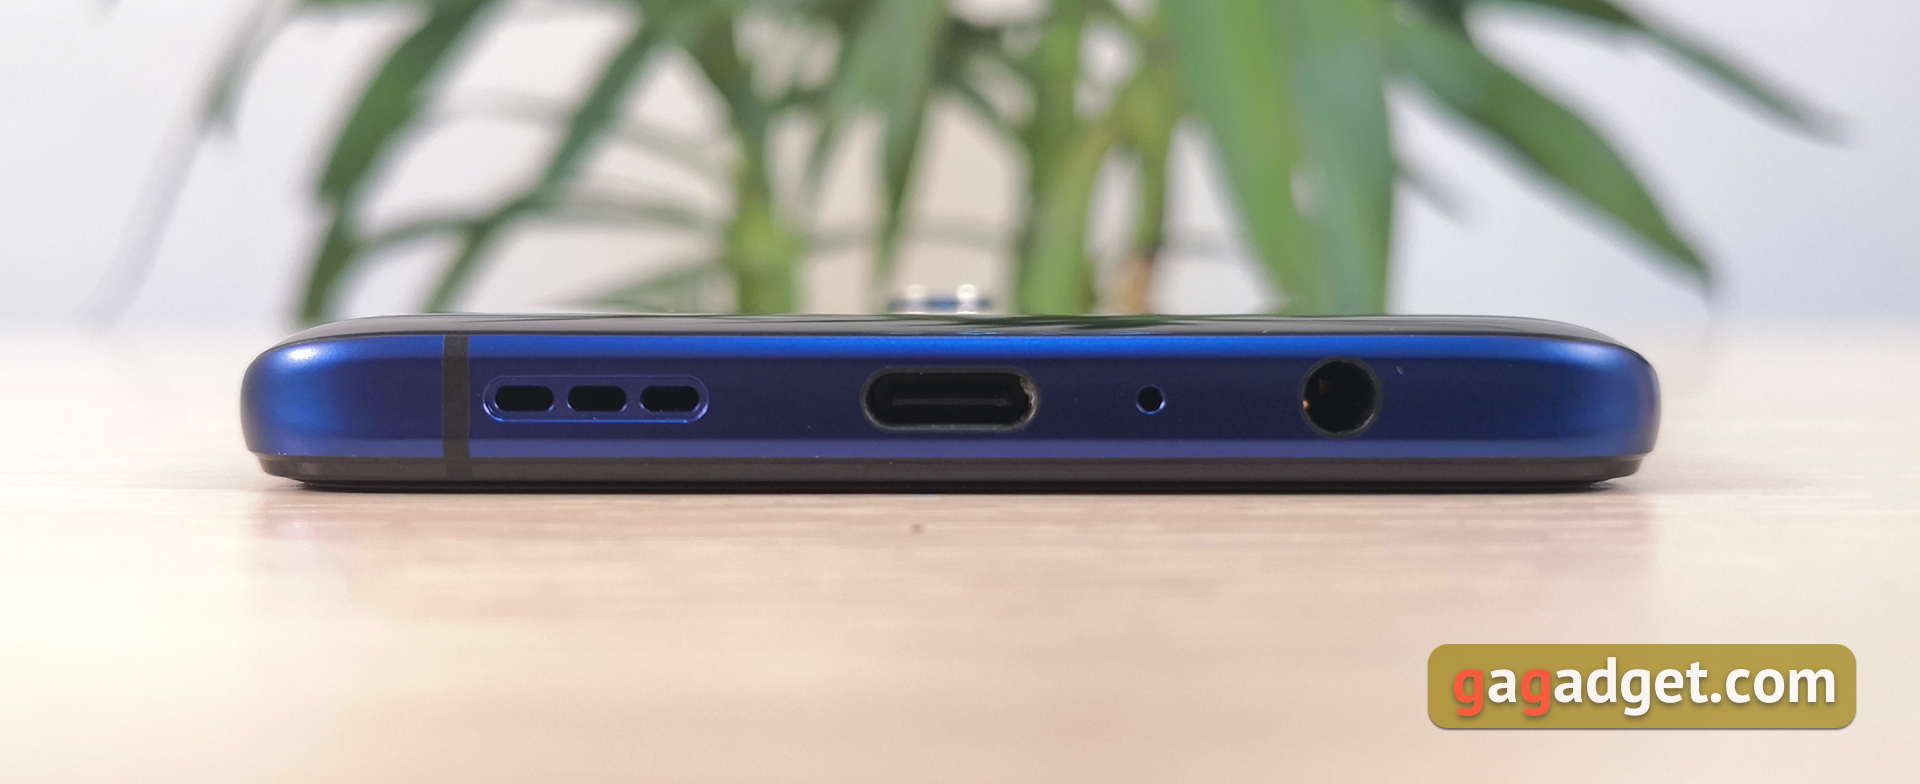 Przegląd Realme X2 Pro: wyświetlacz 90 Hz, Snapdragon 855+ i błyskawiczne naładowanie-13